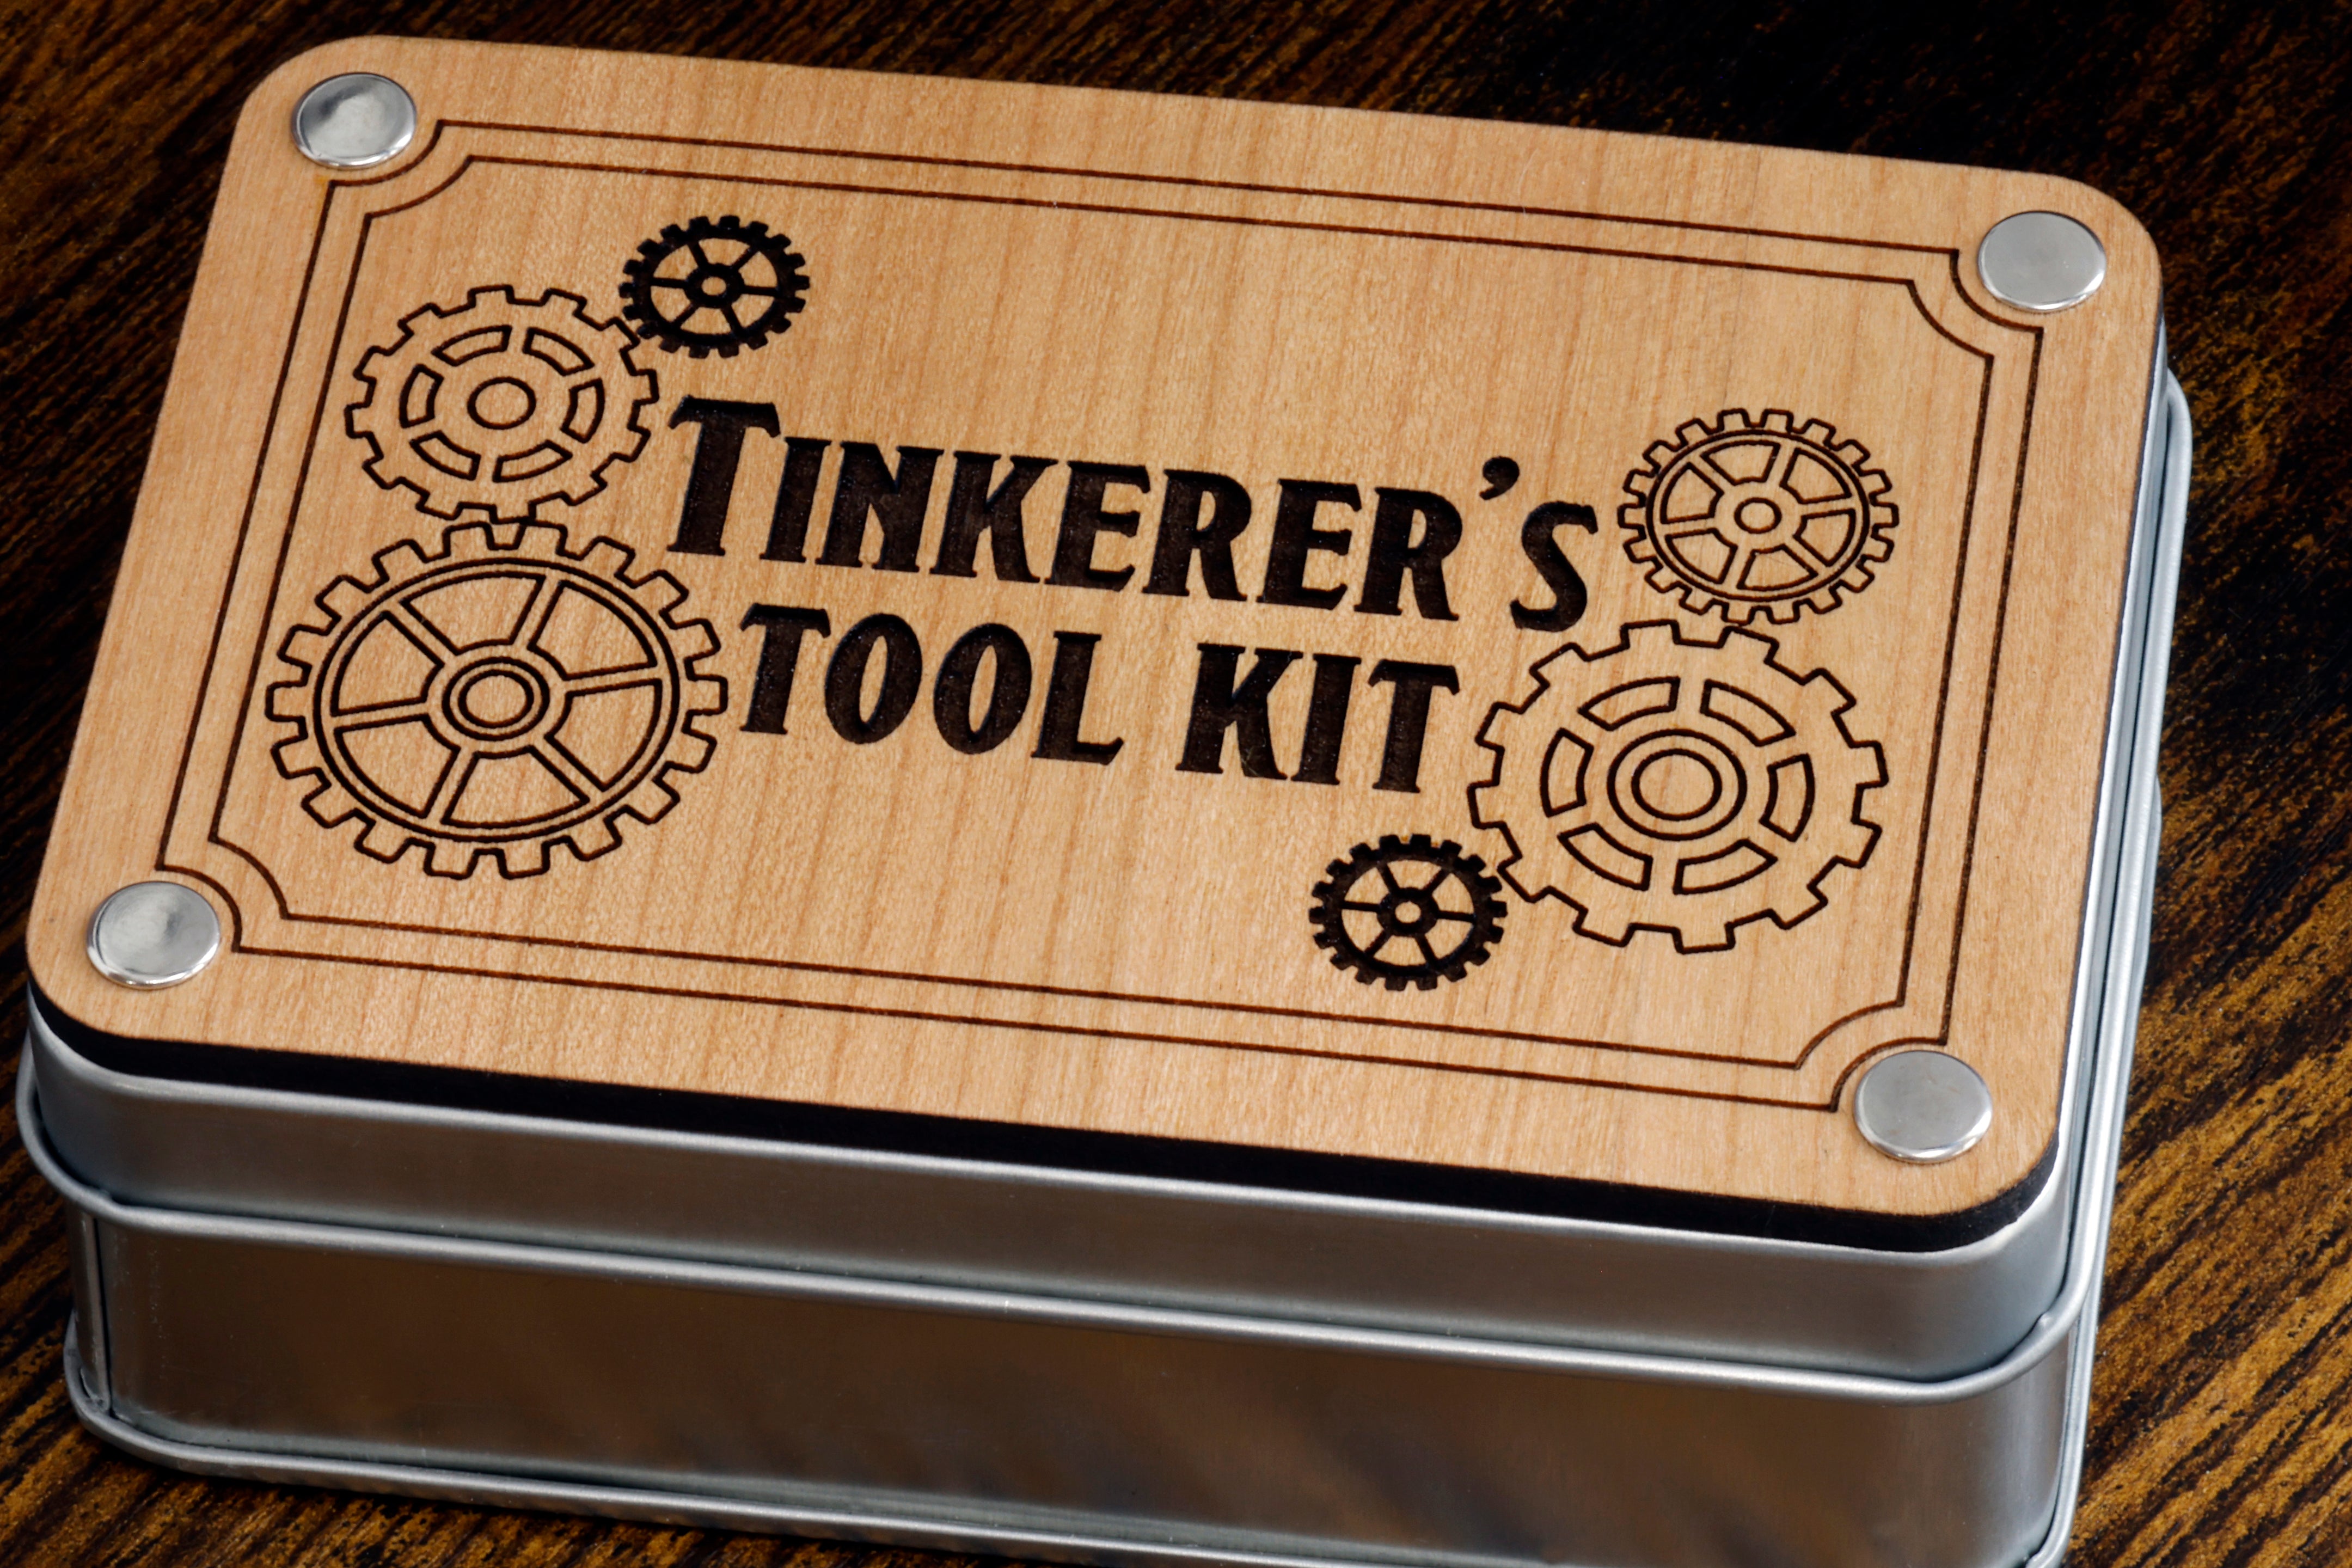 Tinkerer's tool kit dice set with metal box - The Wizard's Vault